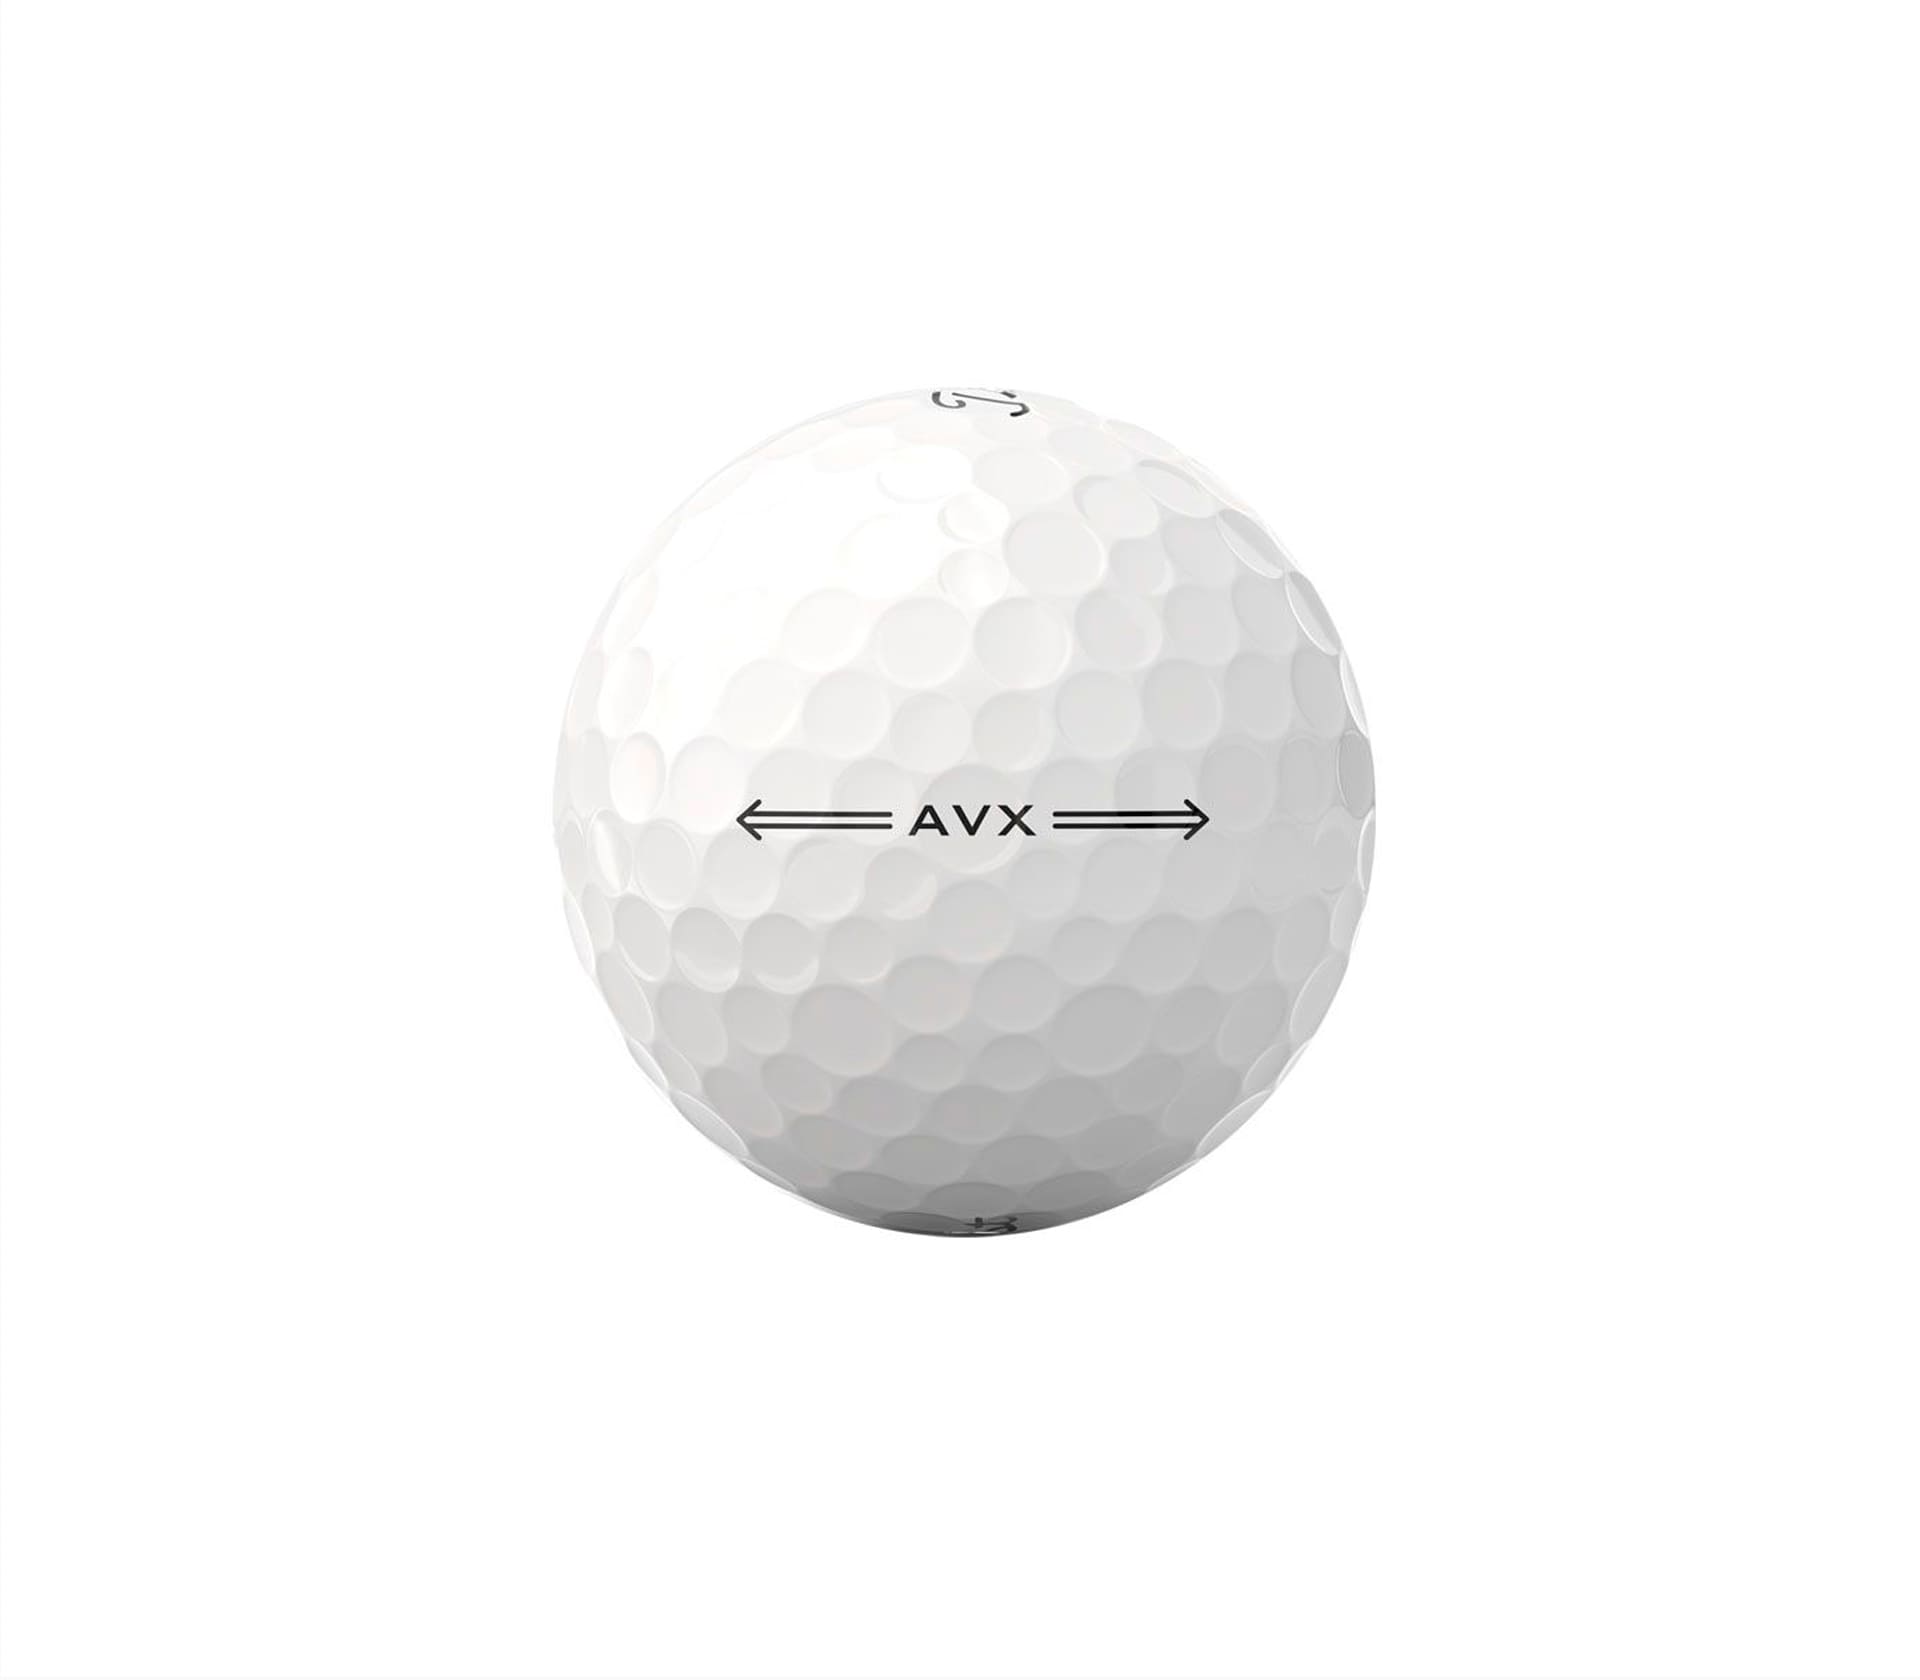 AVX - Caixa 12 unid